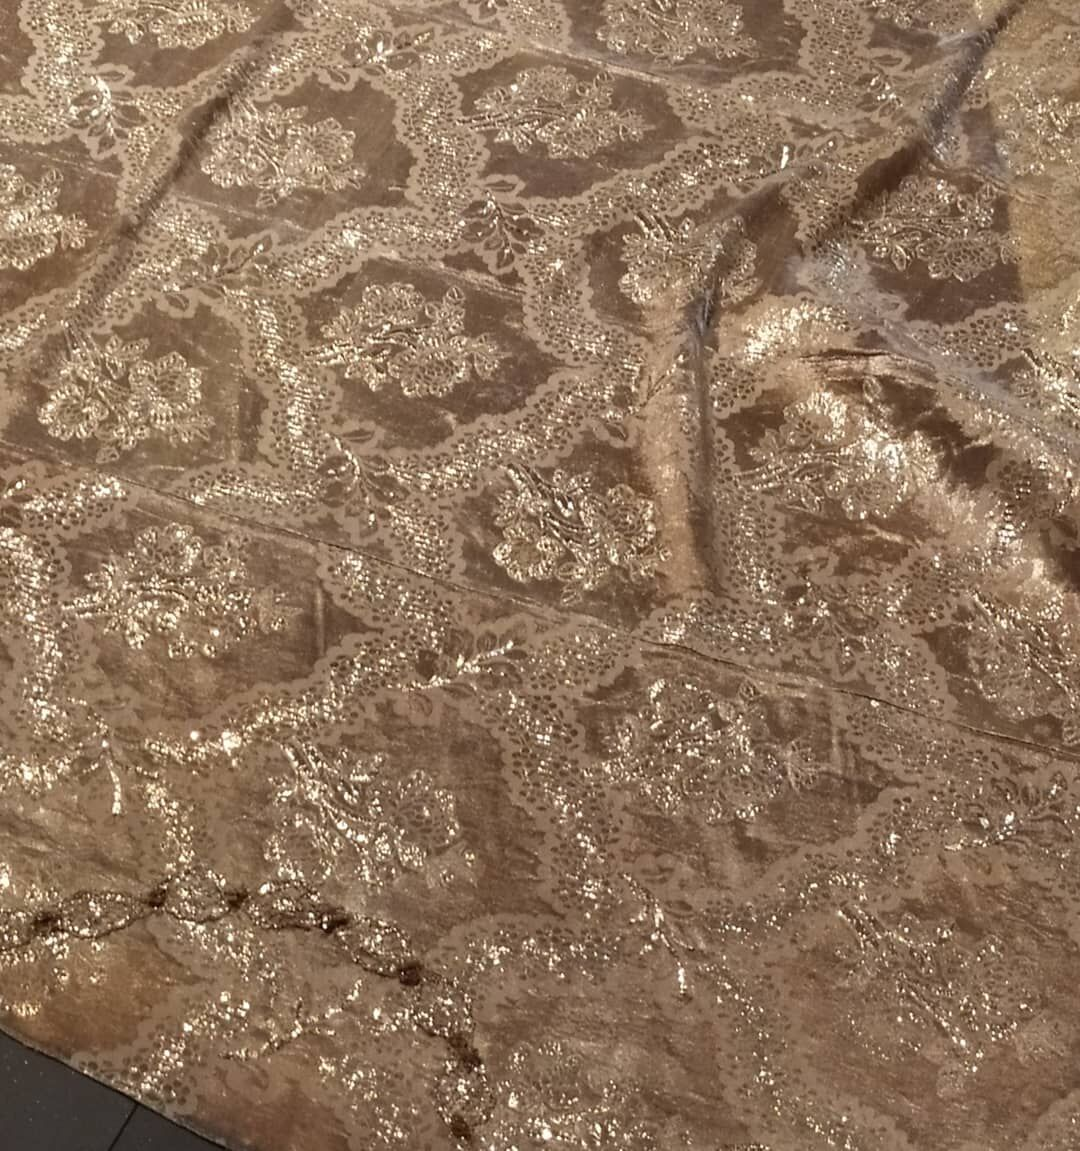 Серебряное платье шведской королевы